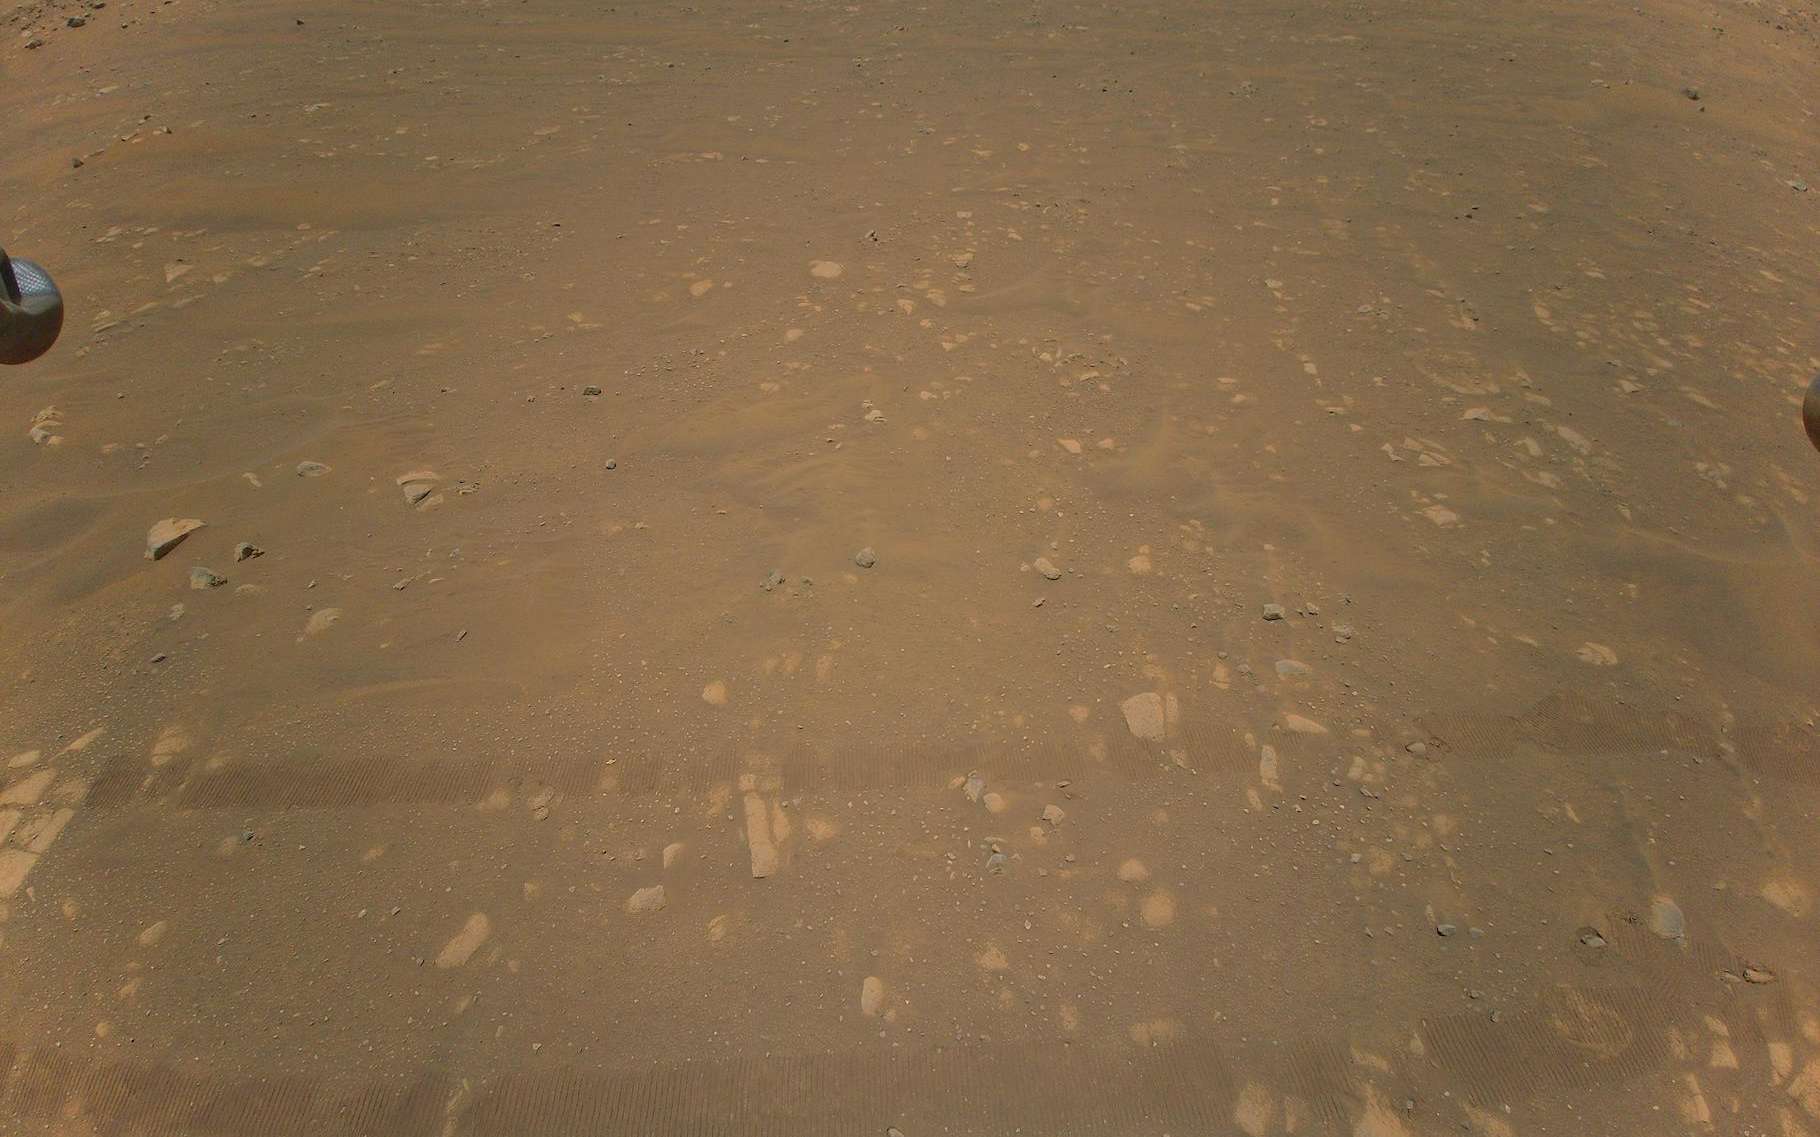 Sur cette troisième image couleur renvoyée par Ingenuity aux ingénieurs de la Nasa, on devine encore les traces laissées par le rover Perseverance au sol. Mais d’autres images le montrent bien plus clairement. © Nasa, JPL-Caltech